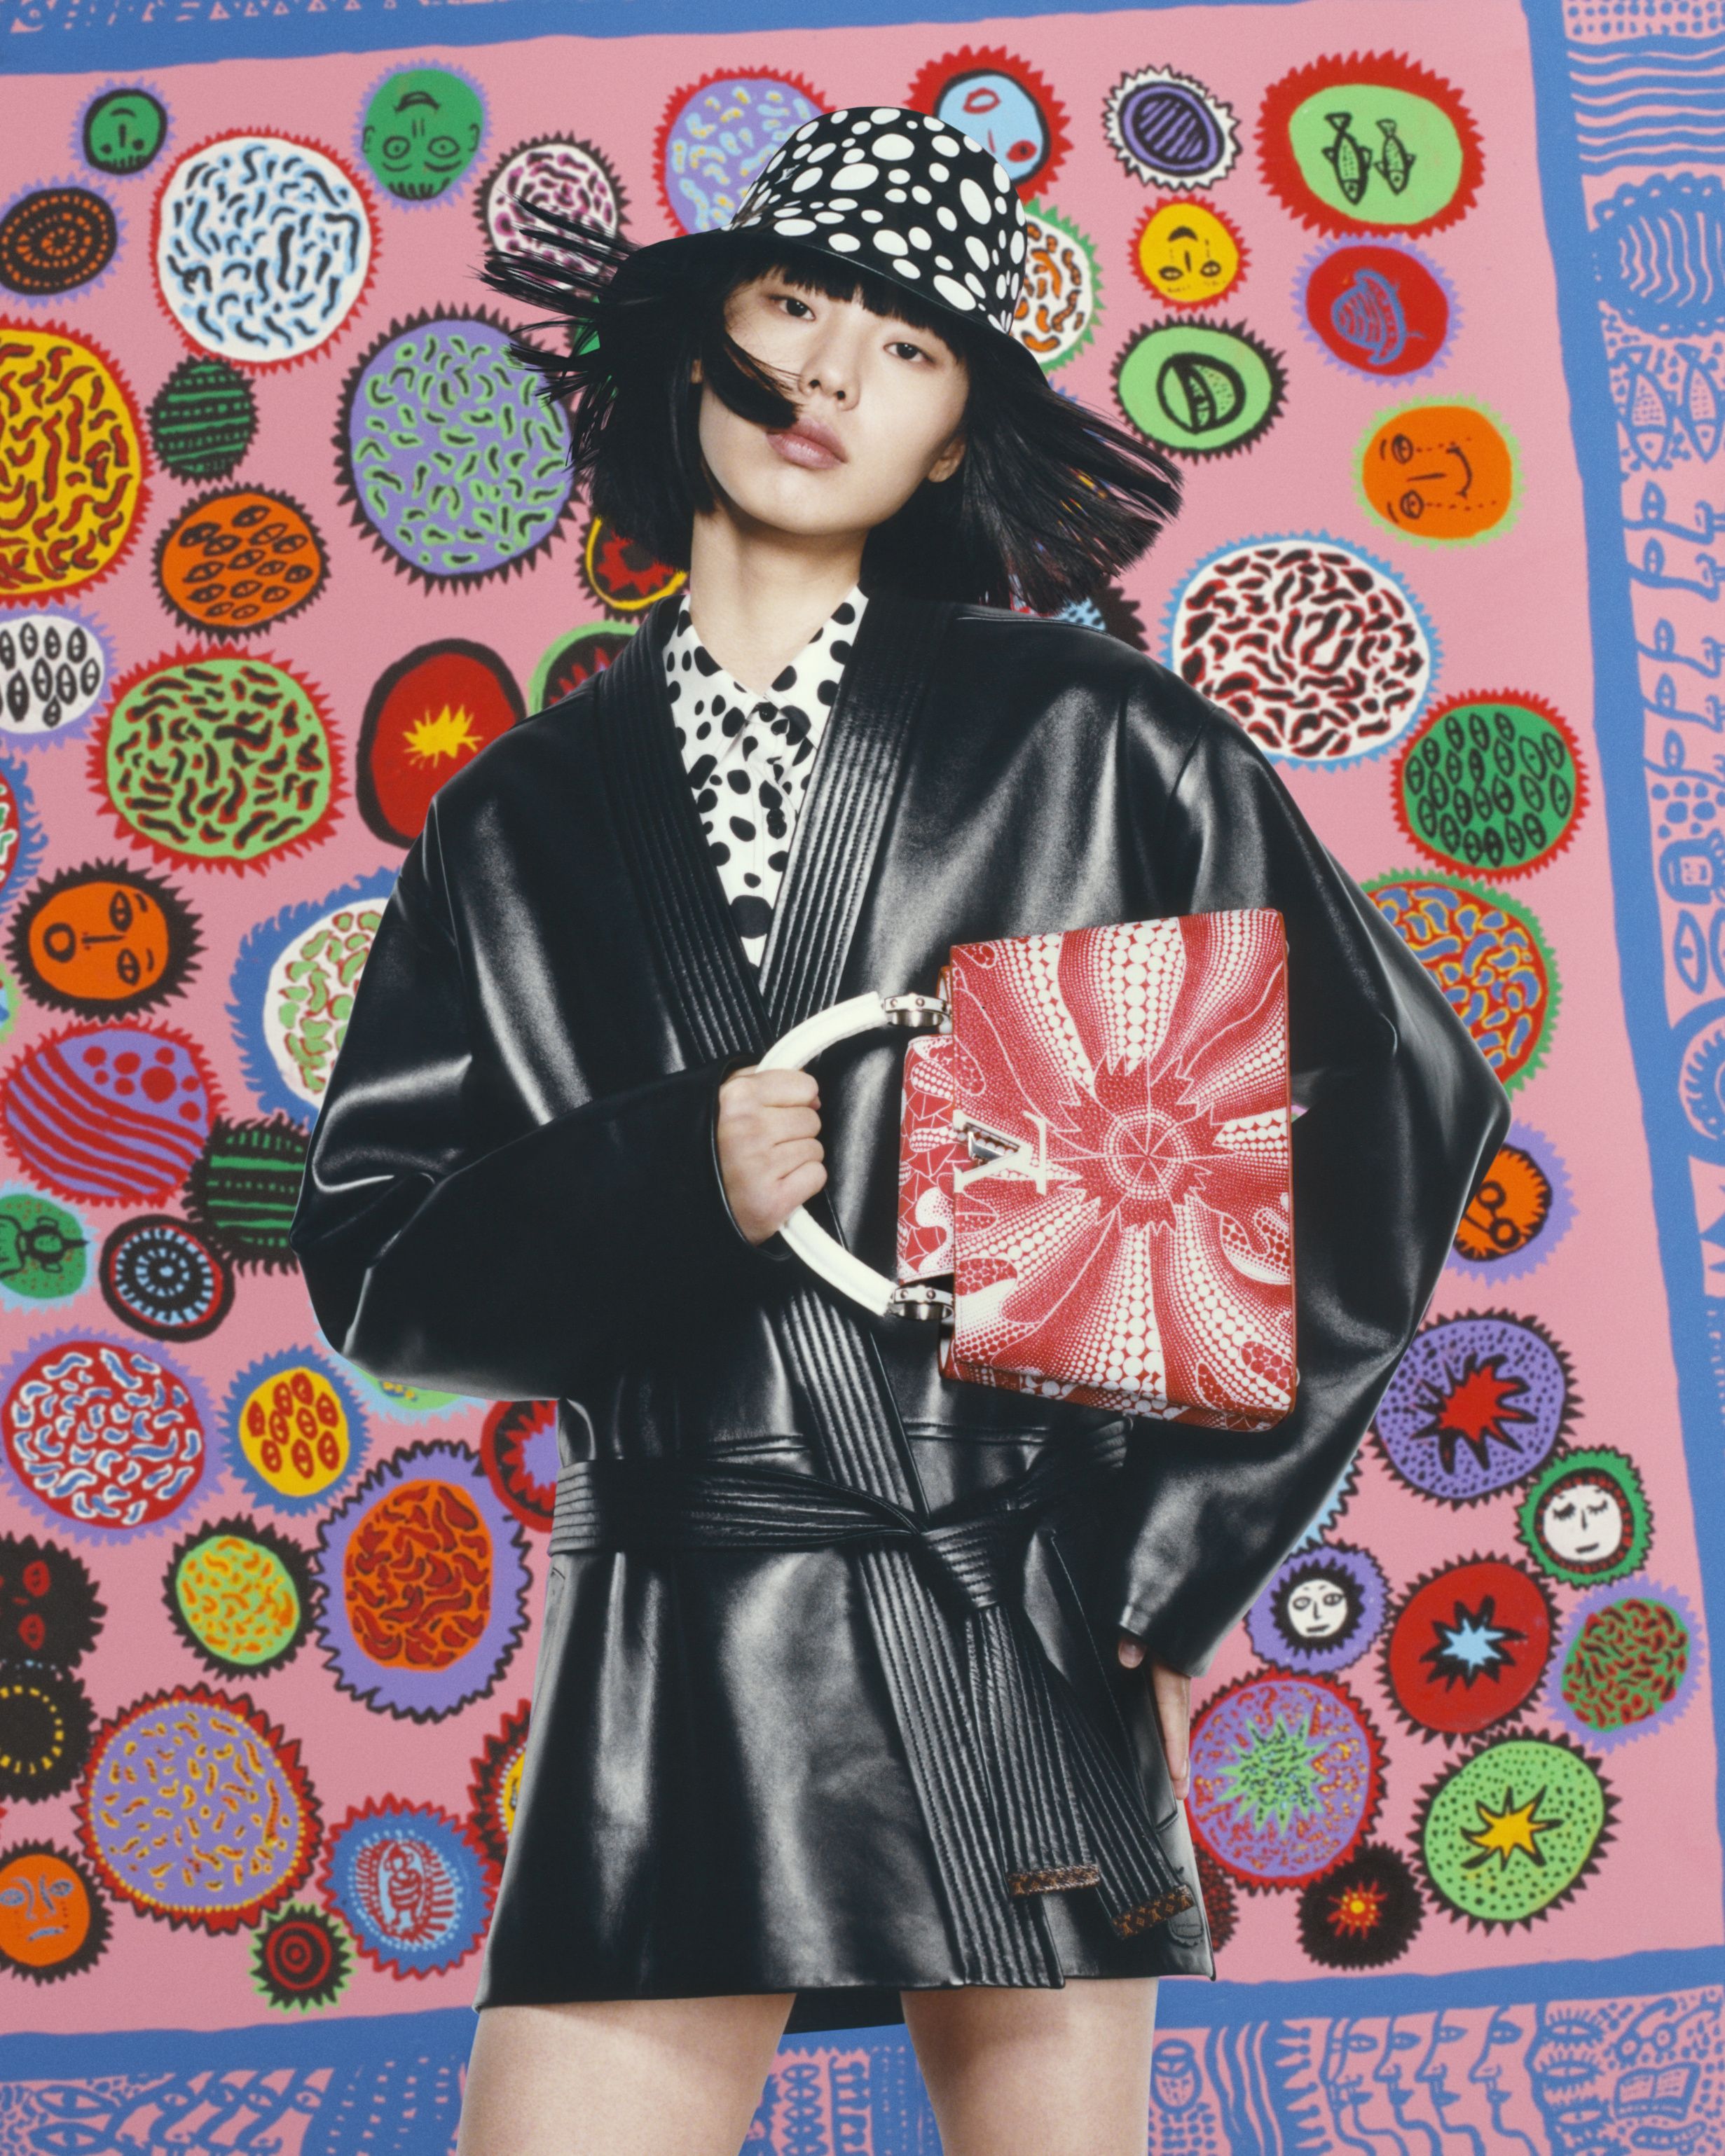 La nueva colección de Louis Vuitton y Yayoi Kusama: desde lunares de  colores a flores psicodélicas - Infobae